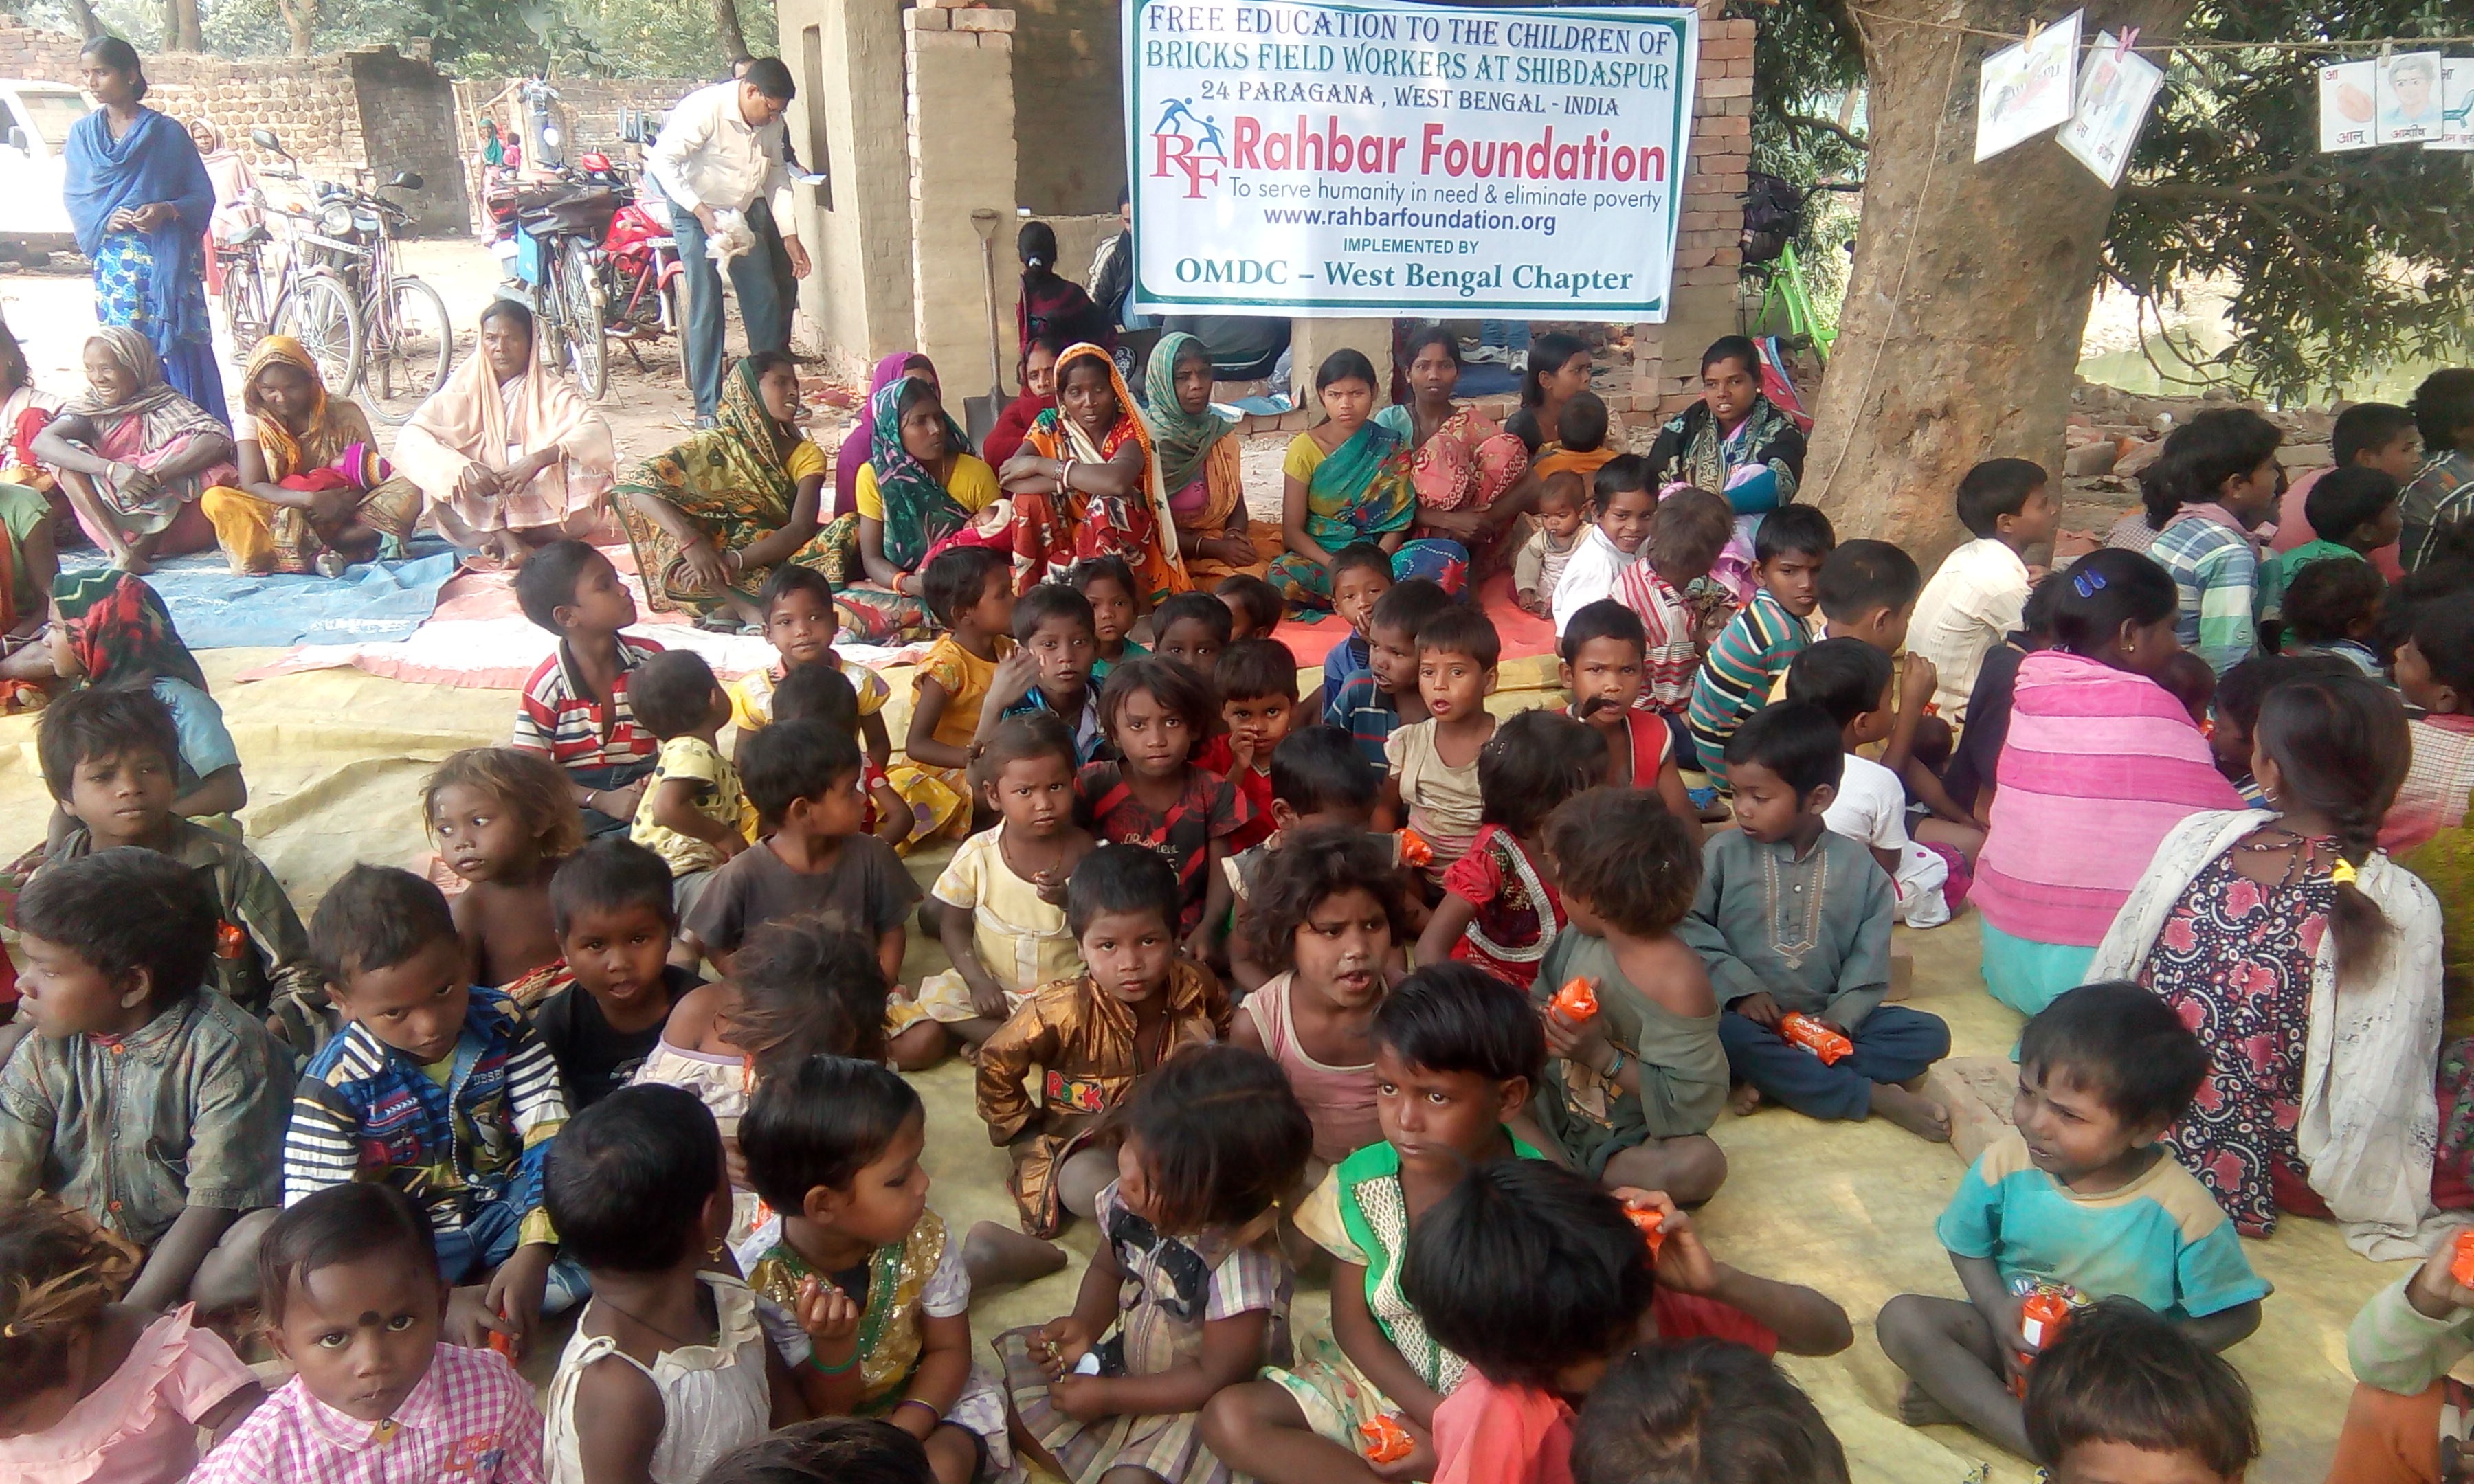 Brisks Field Children School at Shibdaspur, West Bengal